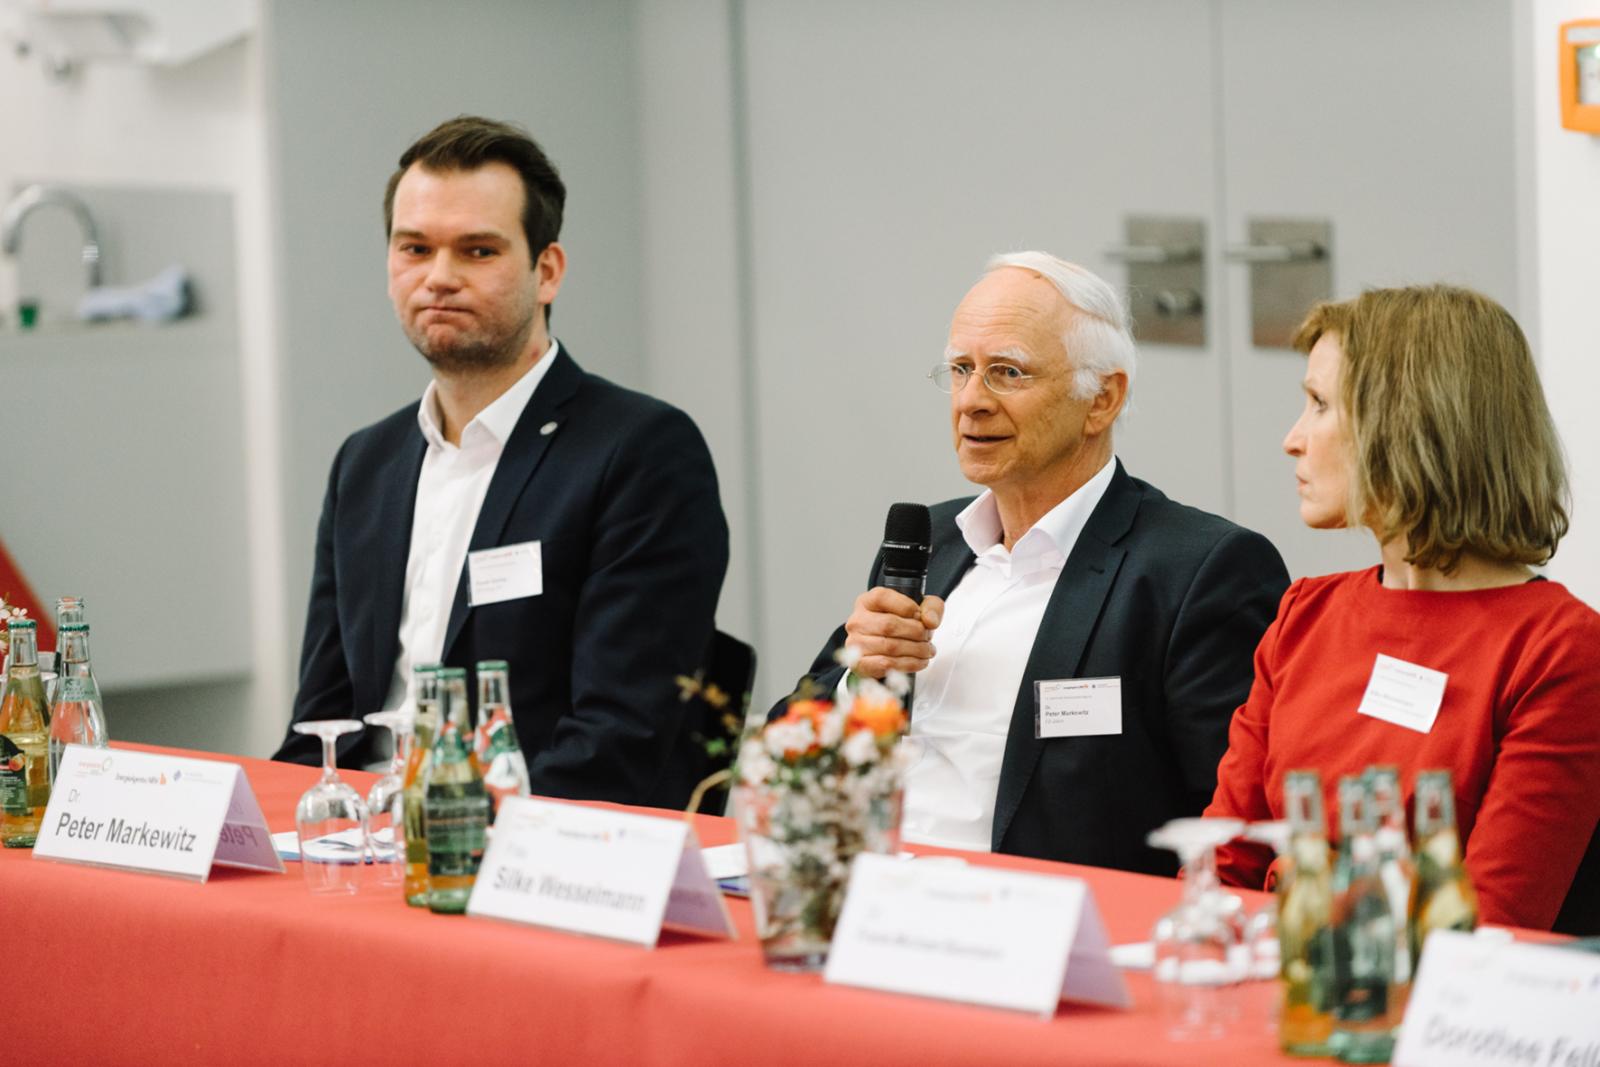 In einer Podiumsdiskussion stellten sich die Redner, hier Dr. Peter Markewitz vom Forschungszentrum Jülich, den Fragen des Publikums. (Foto: FH Münster/Maxi Krähling)